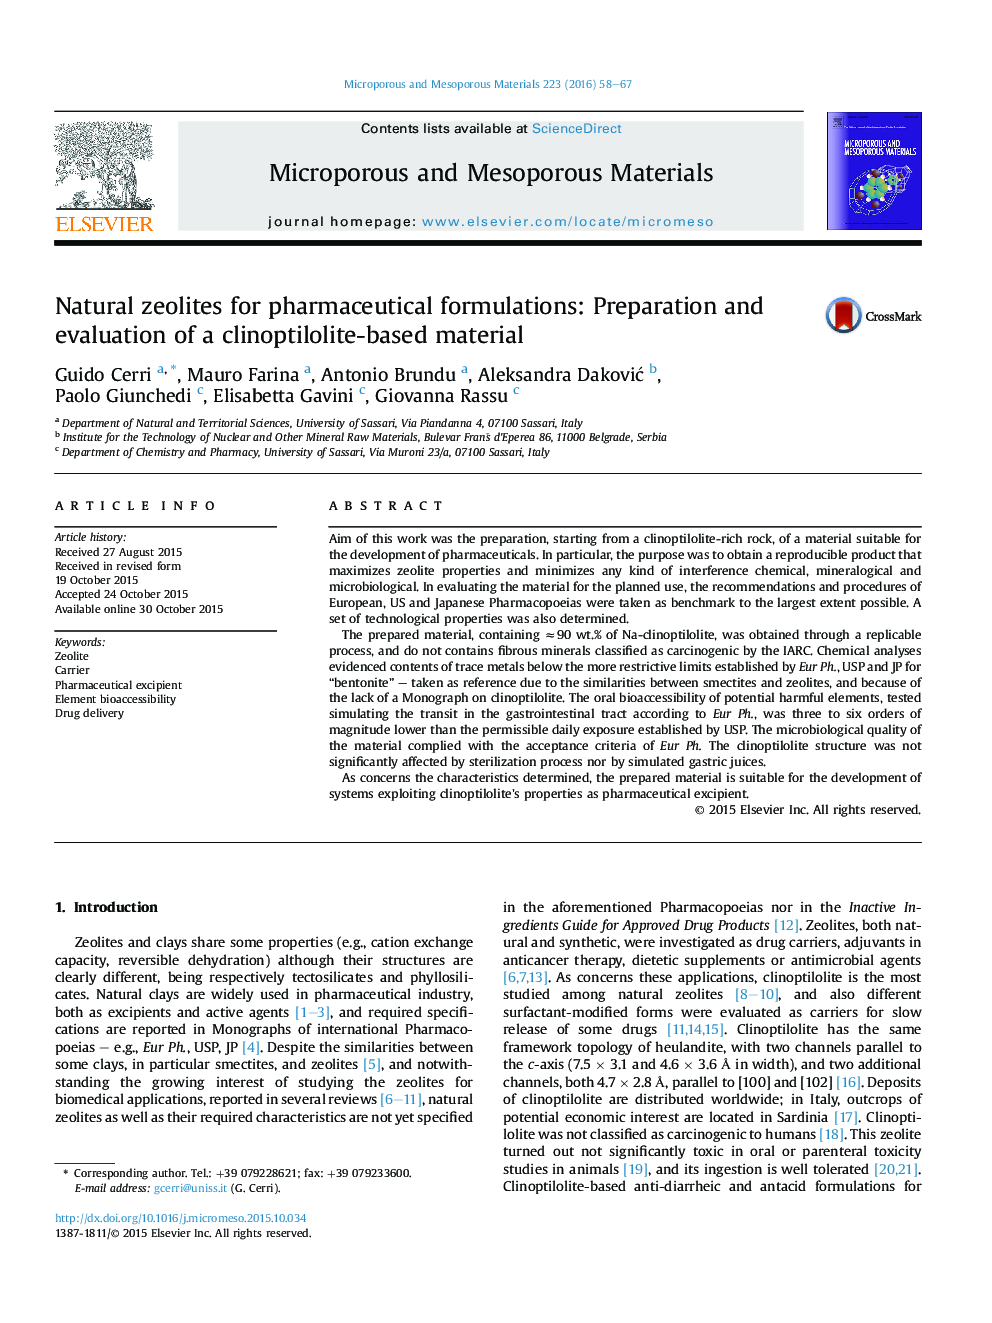 زئولیت های طبیعی برای فرمول های دارویی: تهیه و ارزیابی مواد کلینوپتیلولیت 